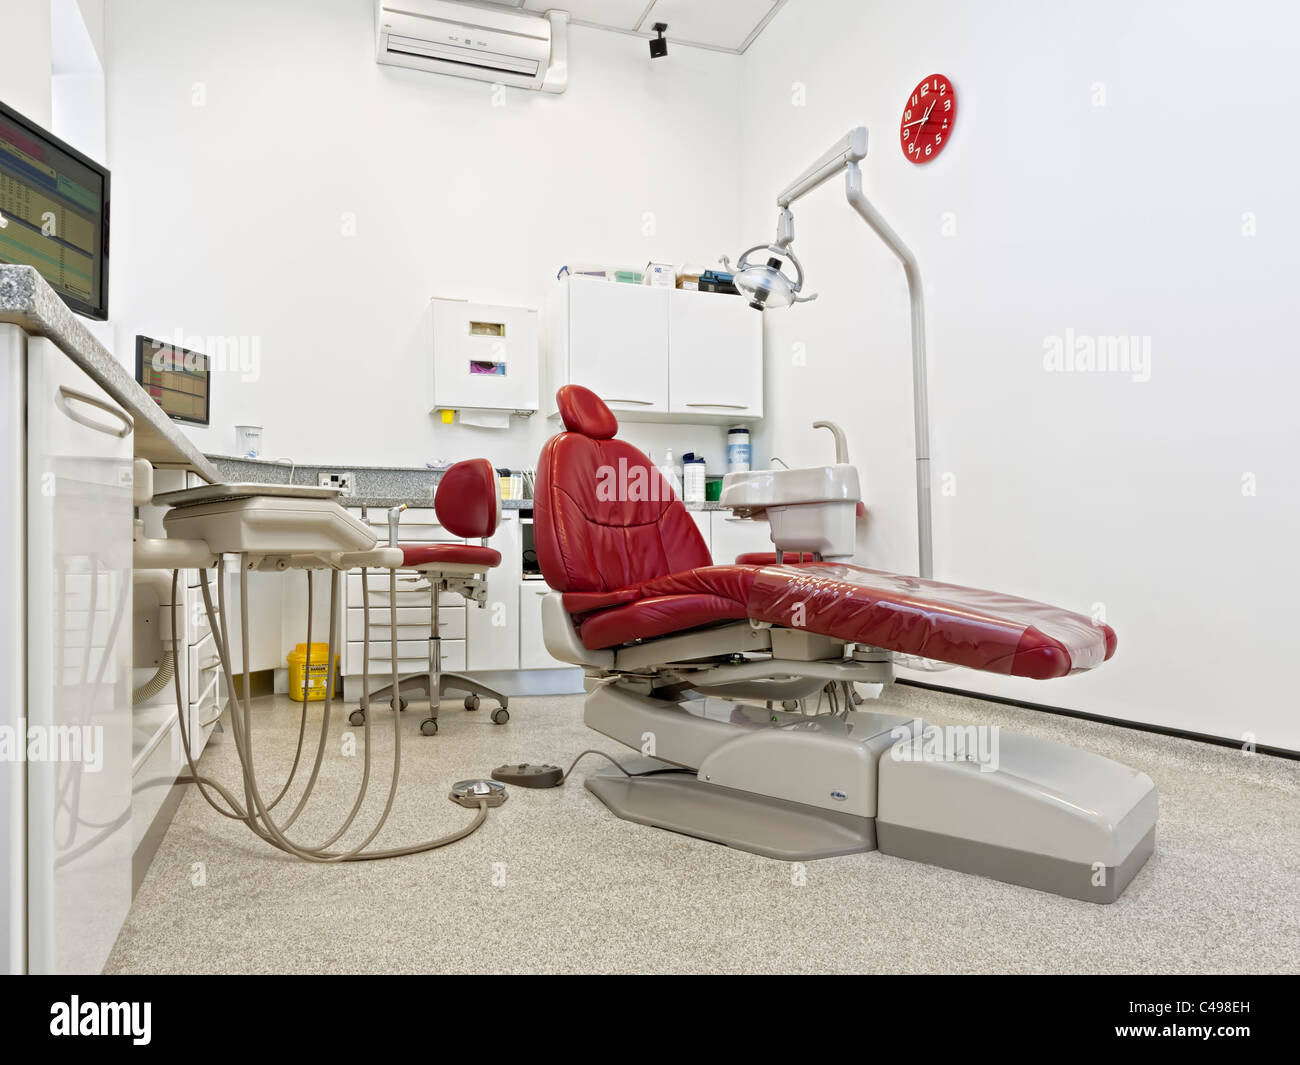 Dentista silla roja en una moderna sala de tratamiento dental Foto de stock